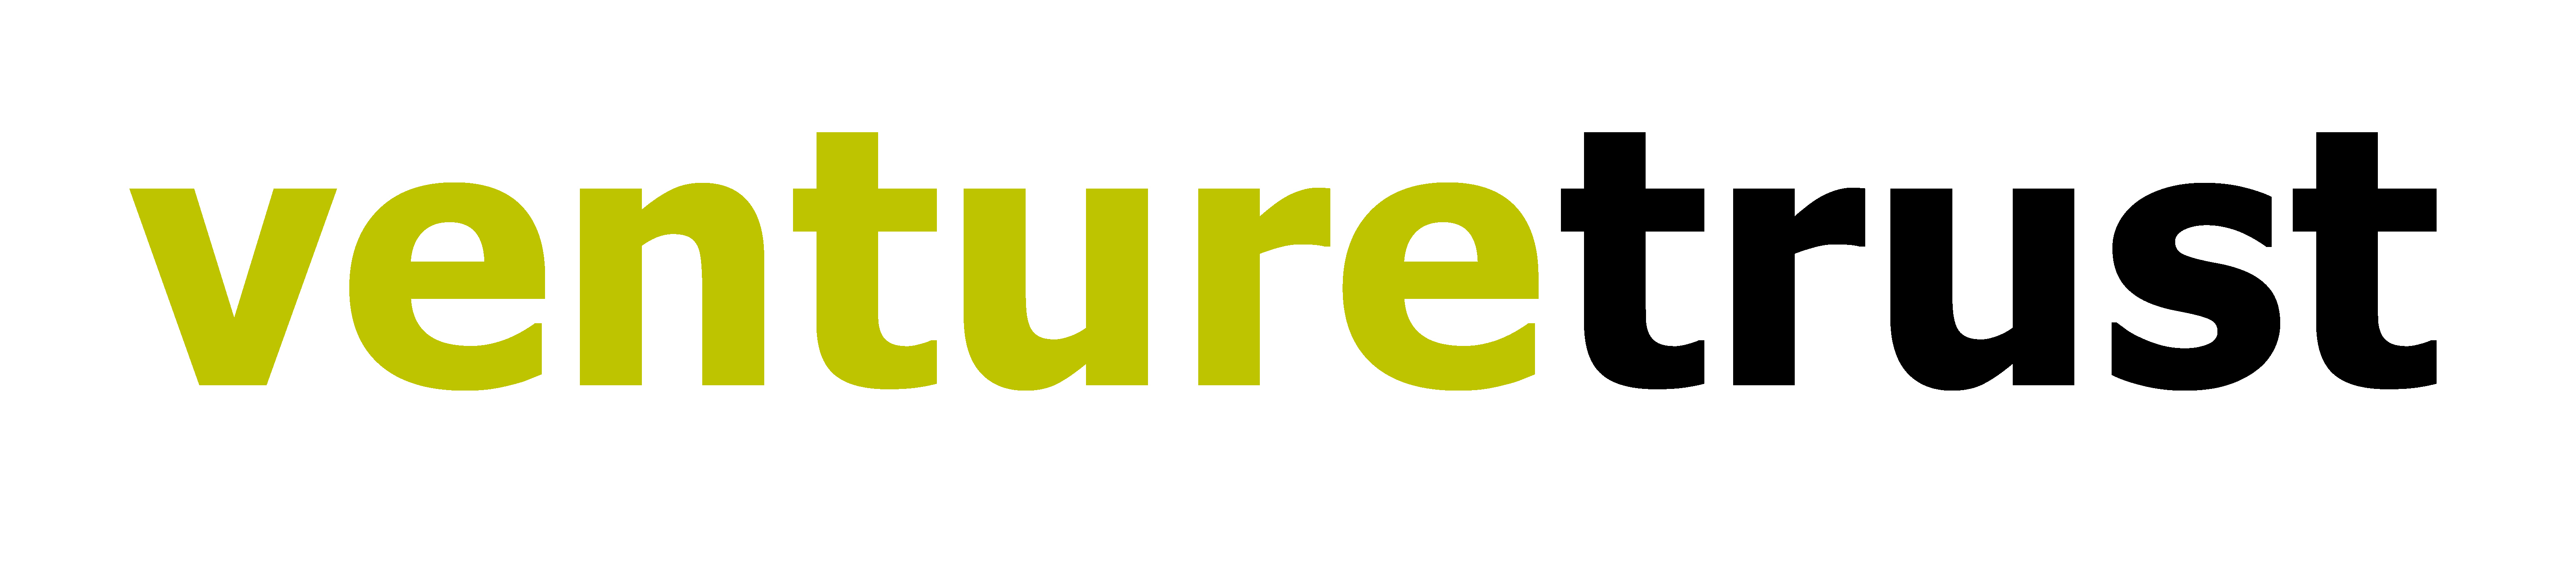 logo for Venture Trust